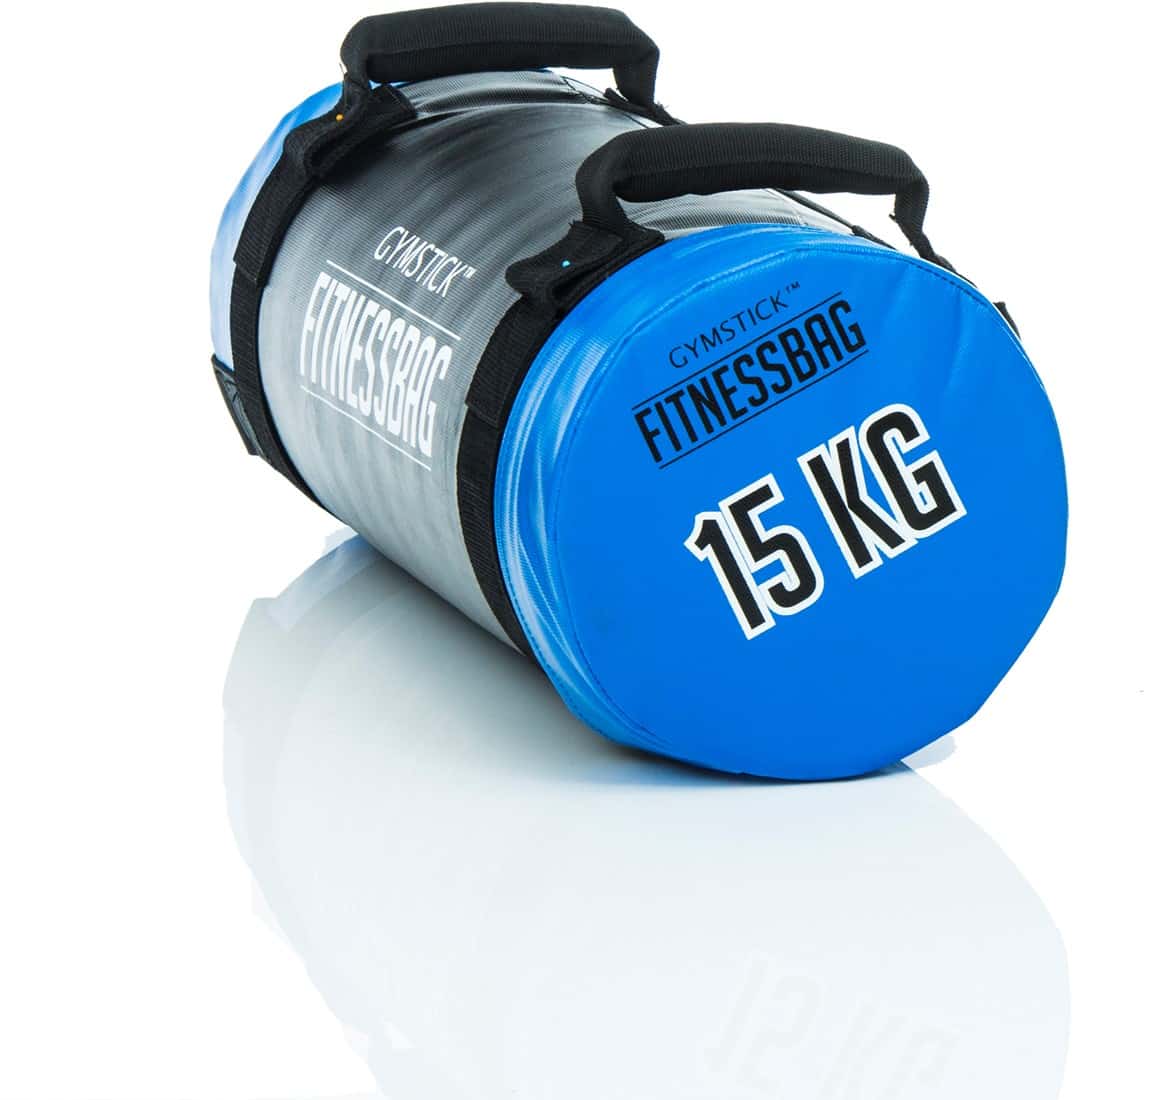 gymstick-fitness-bag-15-kg